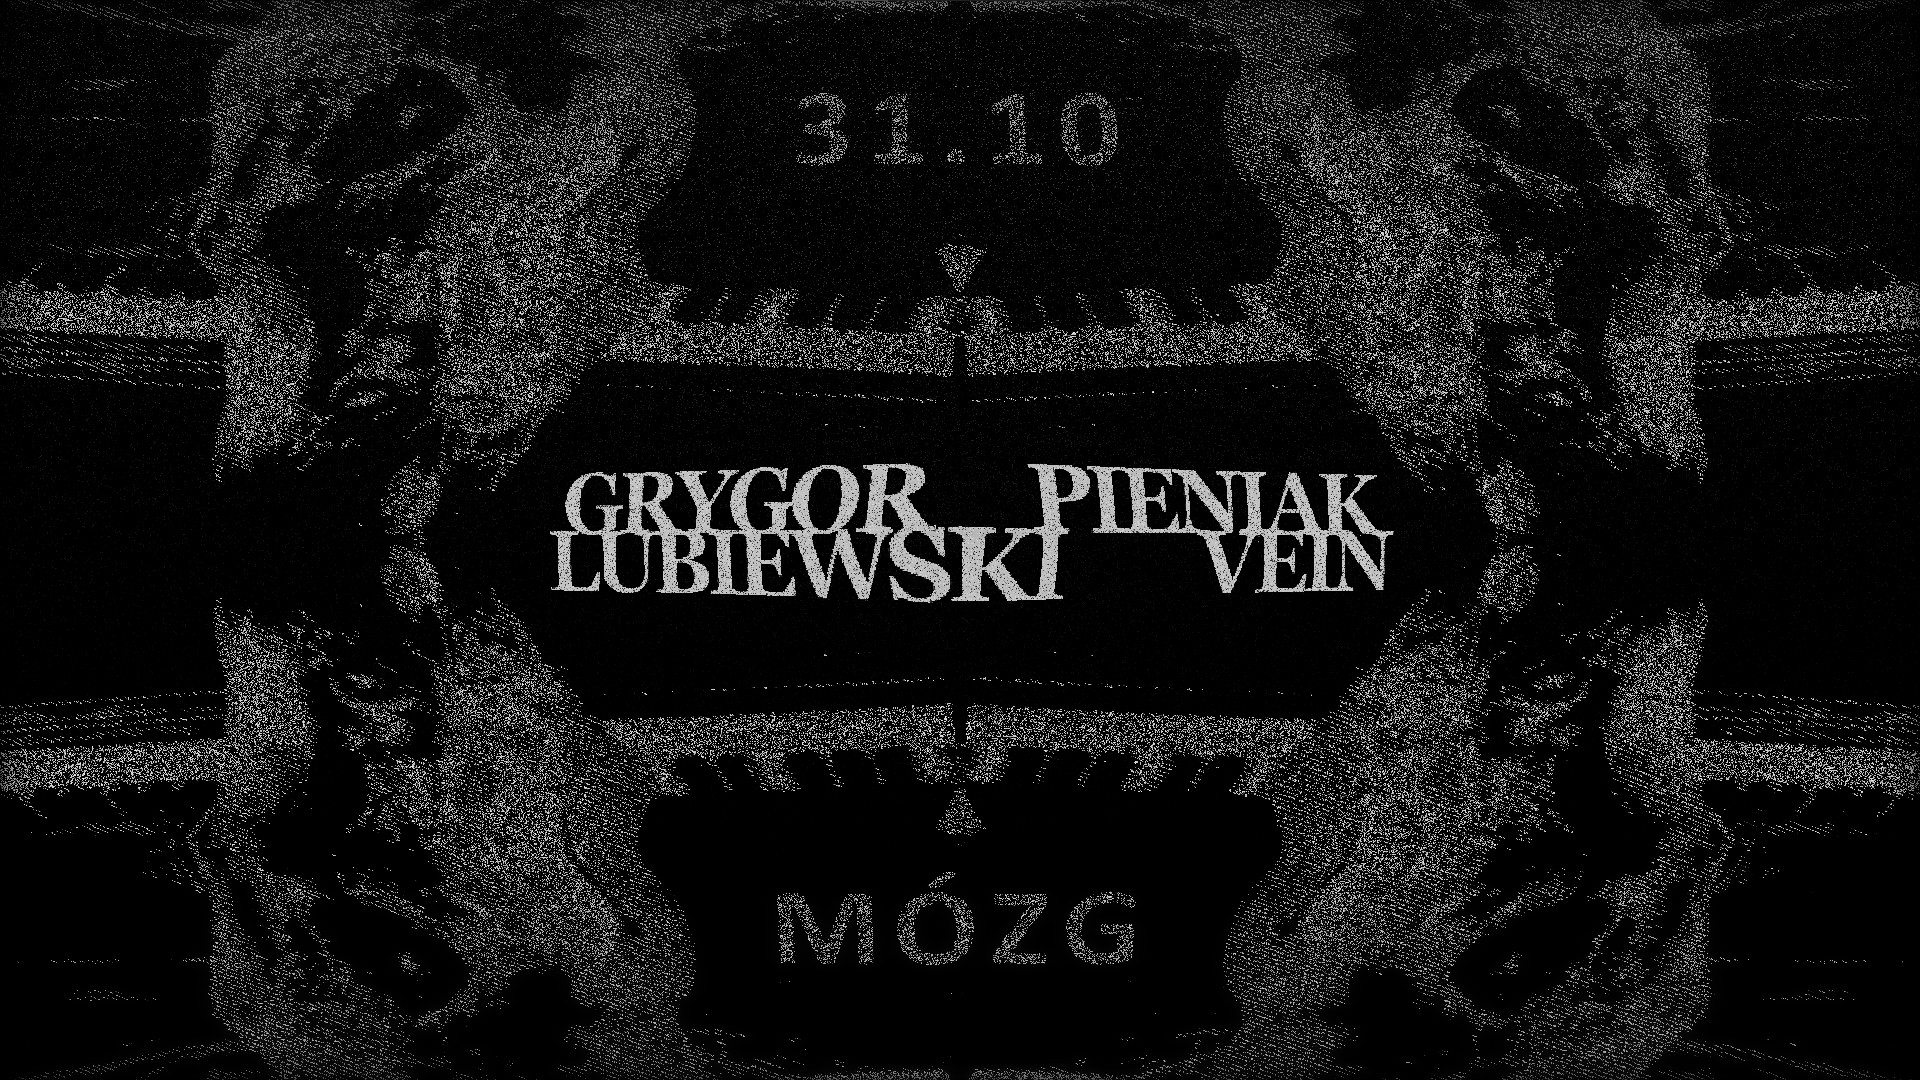 Grygor/Pieniak/Lubiewski/Vein